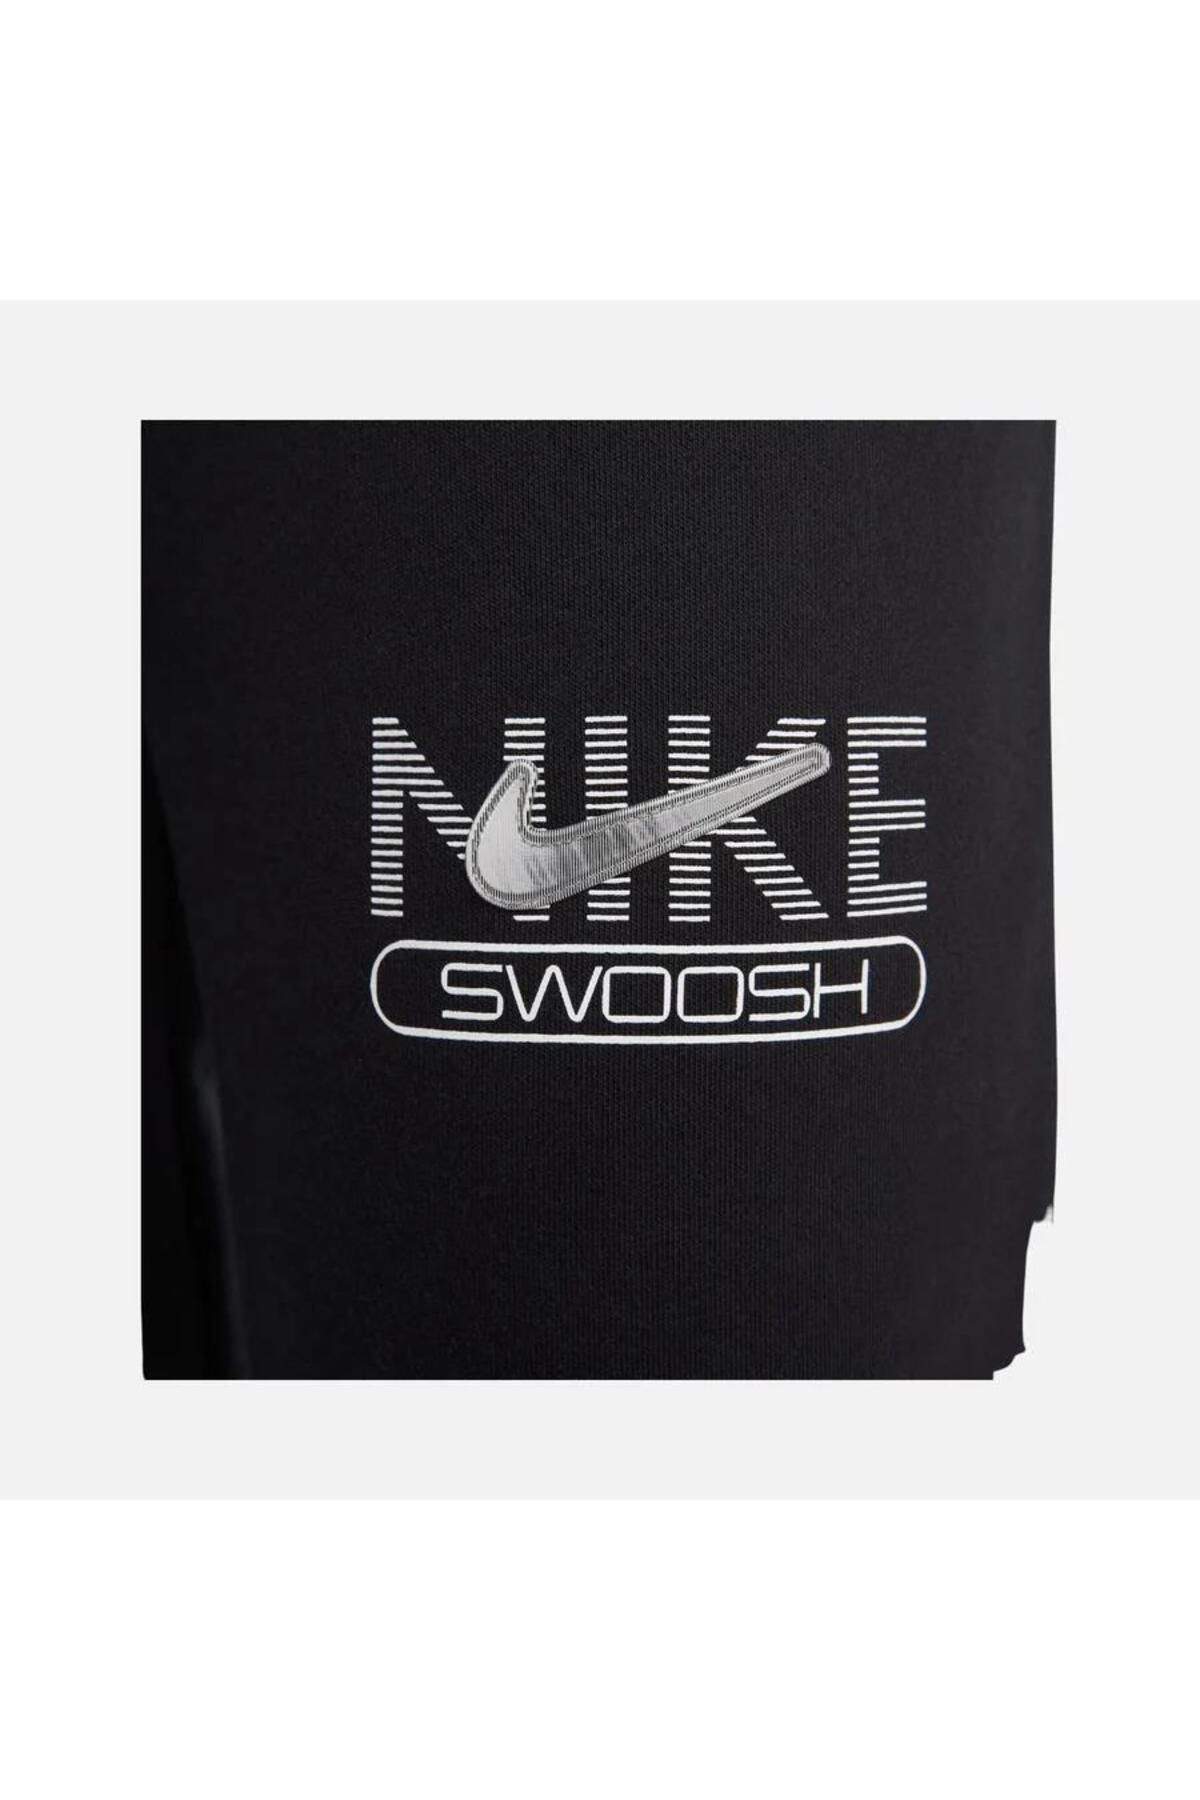 Nike Sportswear Swoosh High-waist Fleece Black Women's Long Plain Sweatpants  Dr5615-010 - Trendyol